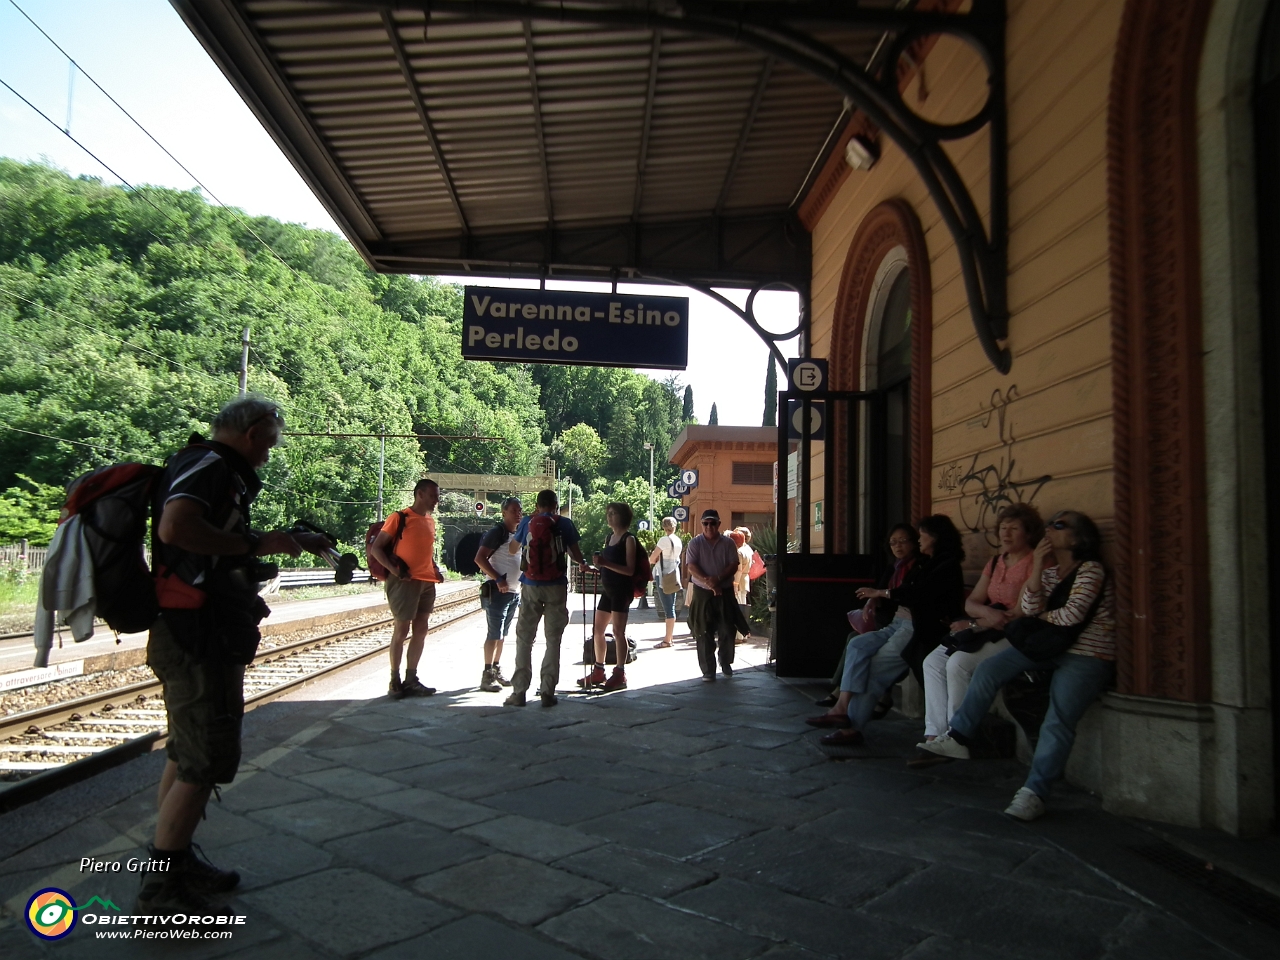 70 stazione ferroviaria di Varenna.JPG